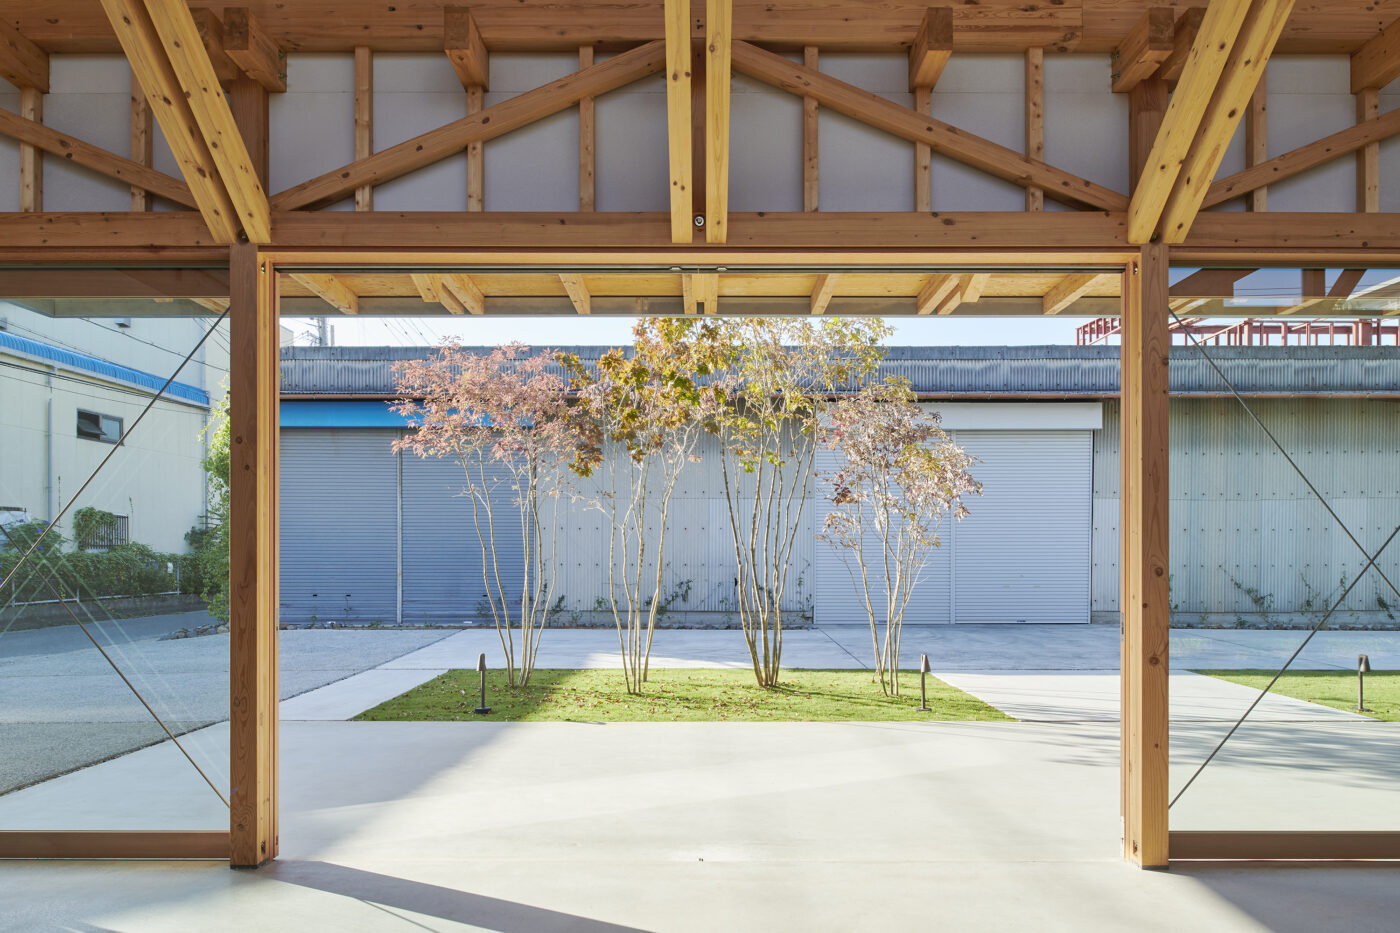 大阪府建築士会「第64回大阪建築コンクール」入賞作品に今津康夫（ninkipen!）の「突板のギャラリー」、ほか関西を拠点とする建築事務所による3作品が受賞。